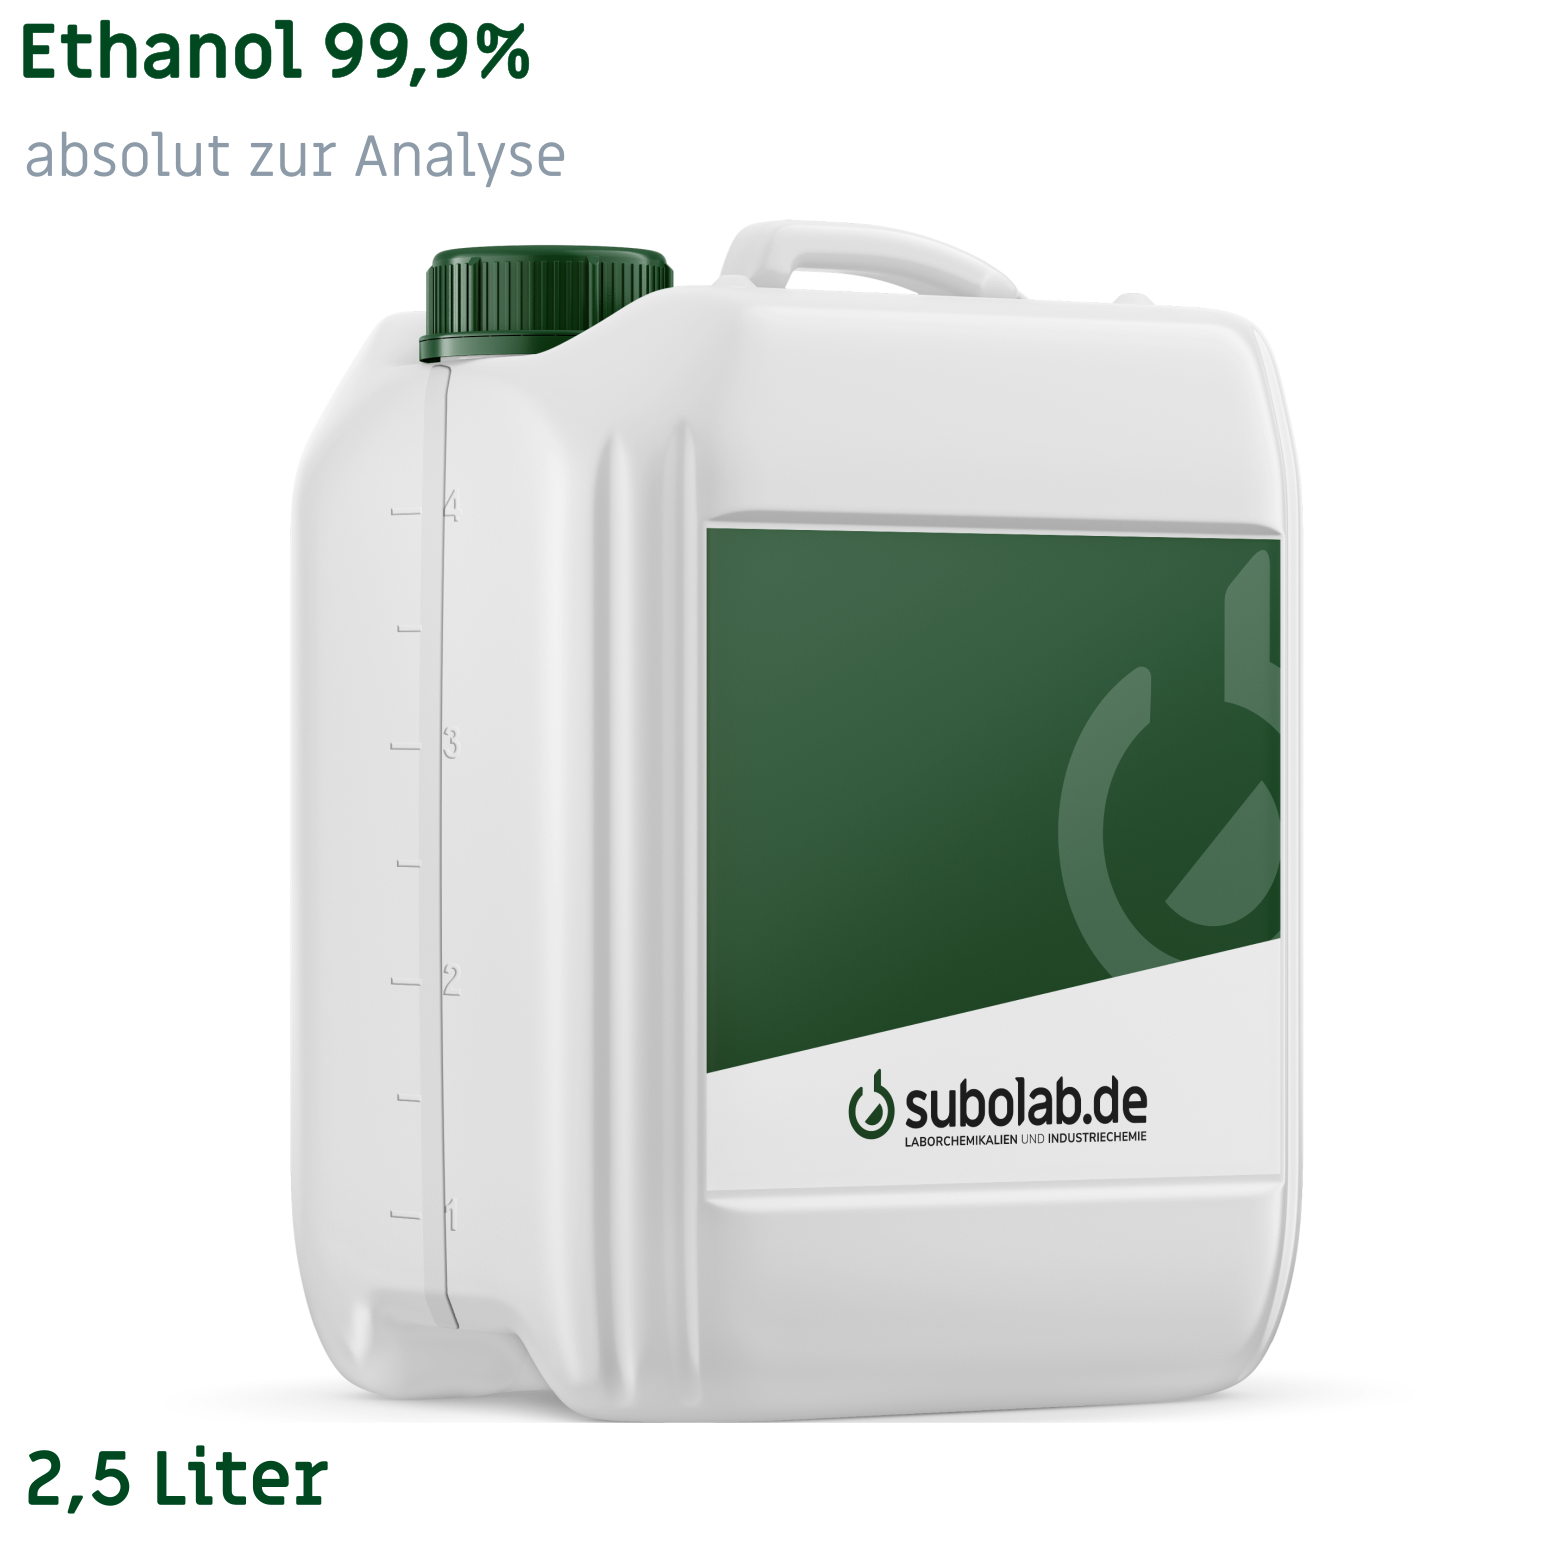 Bild von Ethanol 99,9% absolut zur Analyse (2,5 Liter)